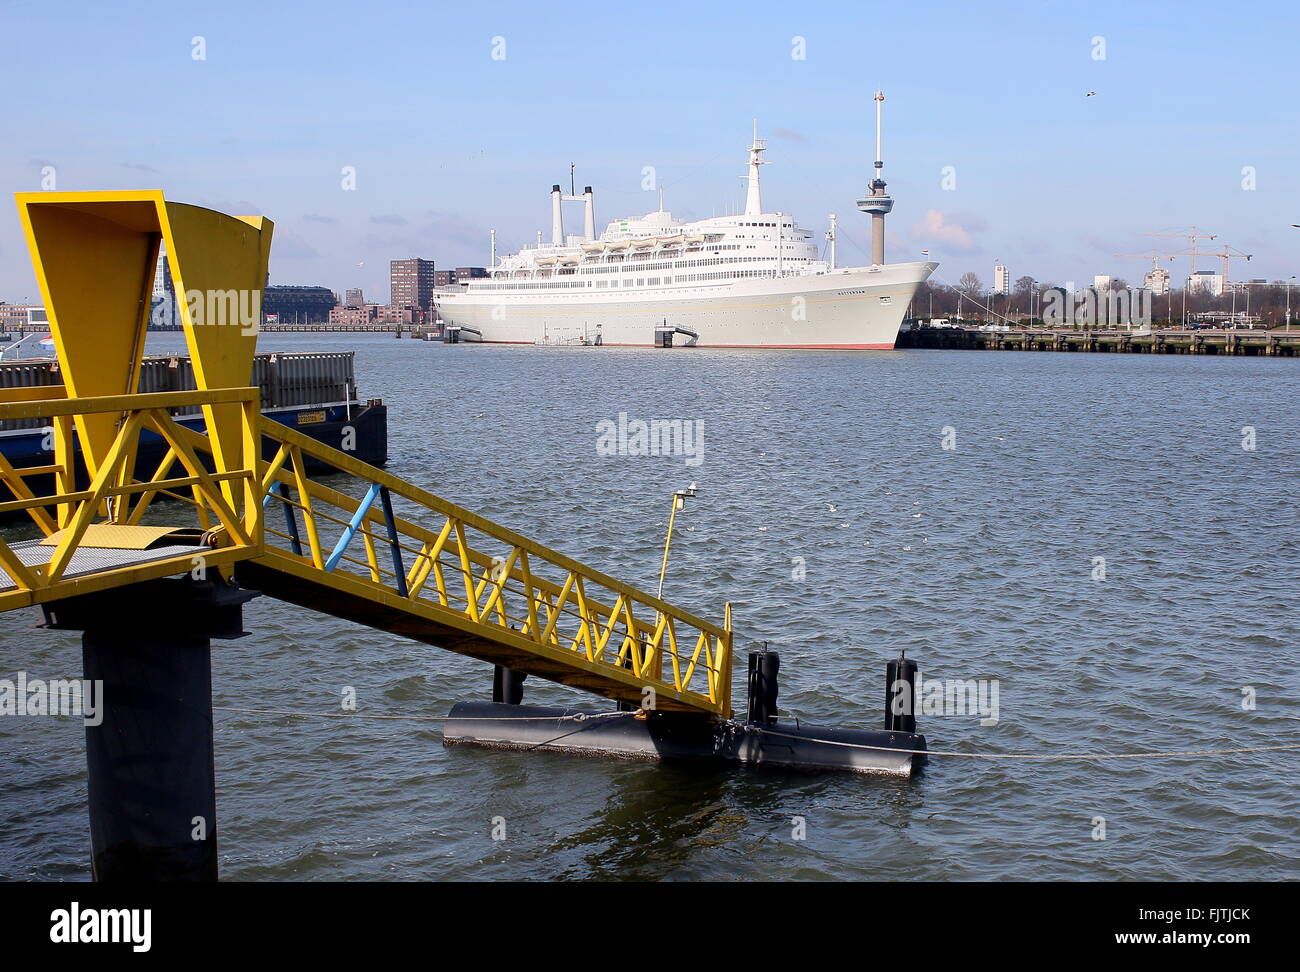 Hotelschiff SS Rotterdam, ehemalige Ozeandampfer & Kreuzfahrtschiff vor Anker in Rotterdam, Niederlande. Maashaven Hafen, Euromast auf der Rückseite Stockfoto